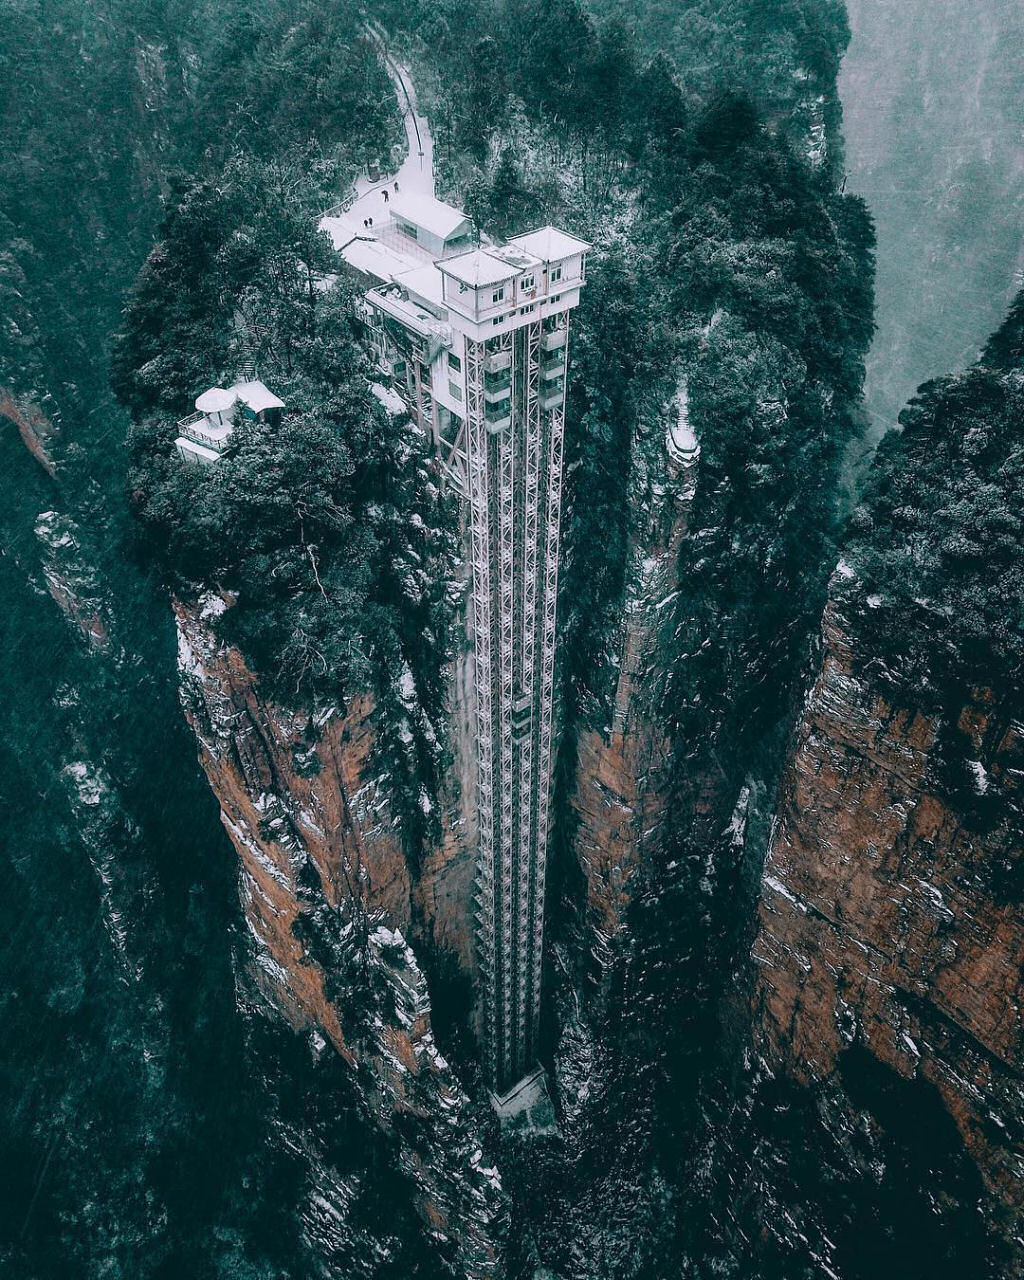 330 metros, o elevador ao ar livre mais alto do mundo em um penhasco na China